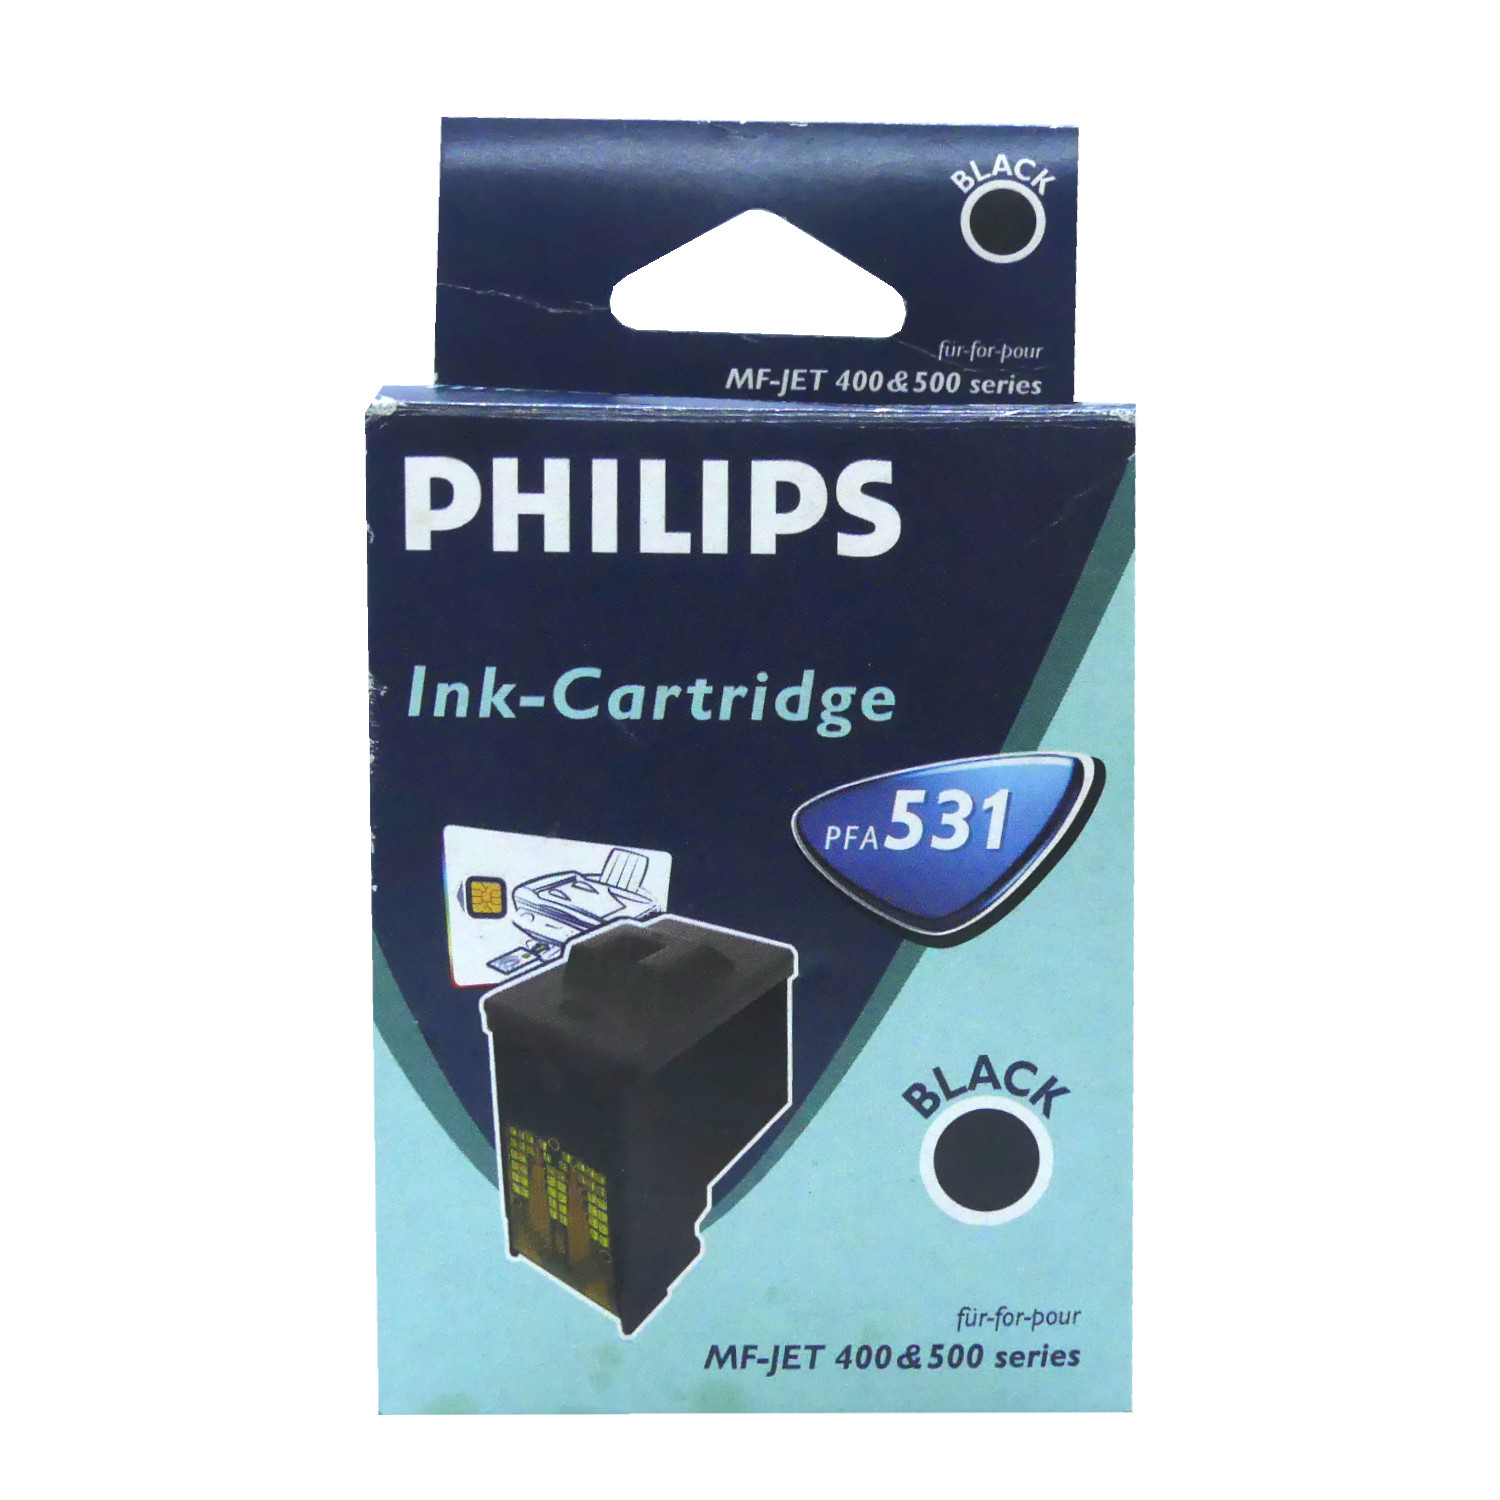 Philips PFA531 Tinten Patrone für MF-JET 400 & 500 Serie Original Ink-Cartridge